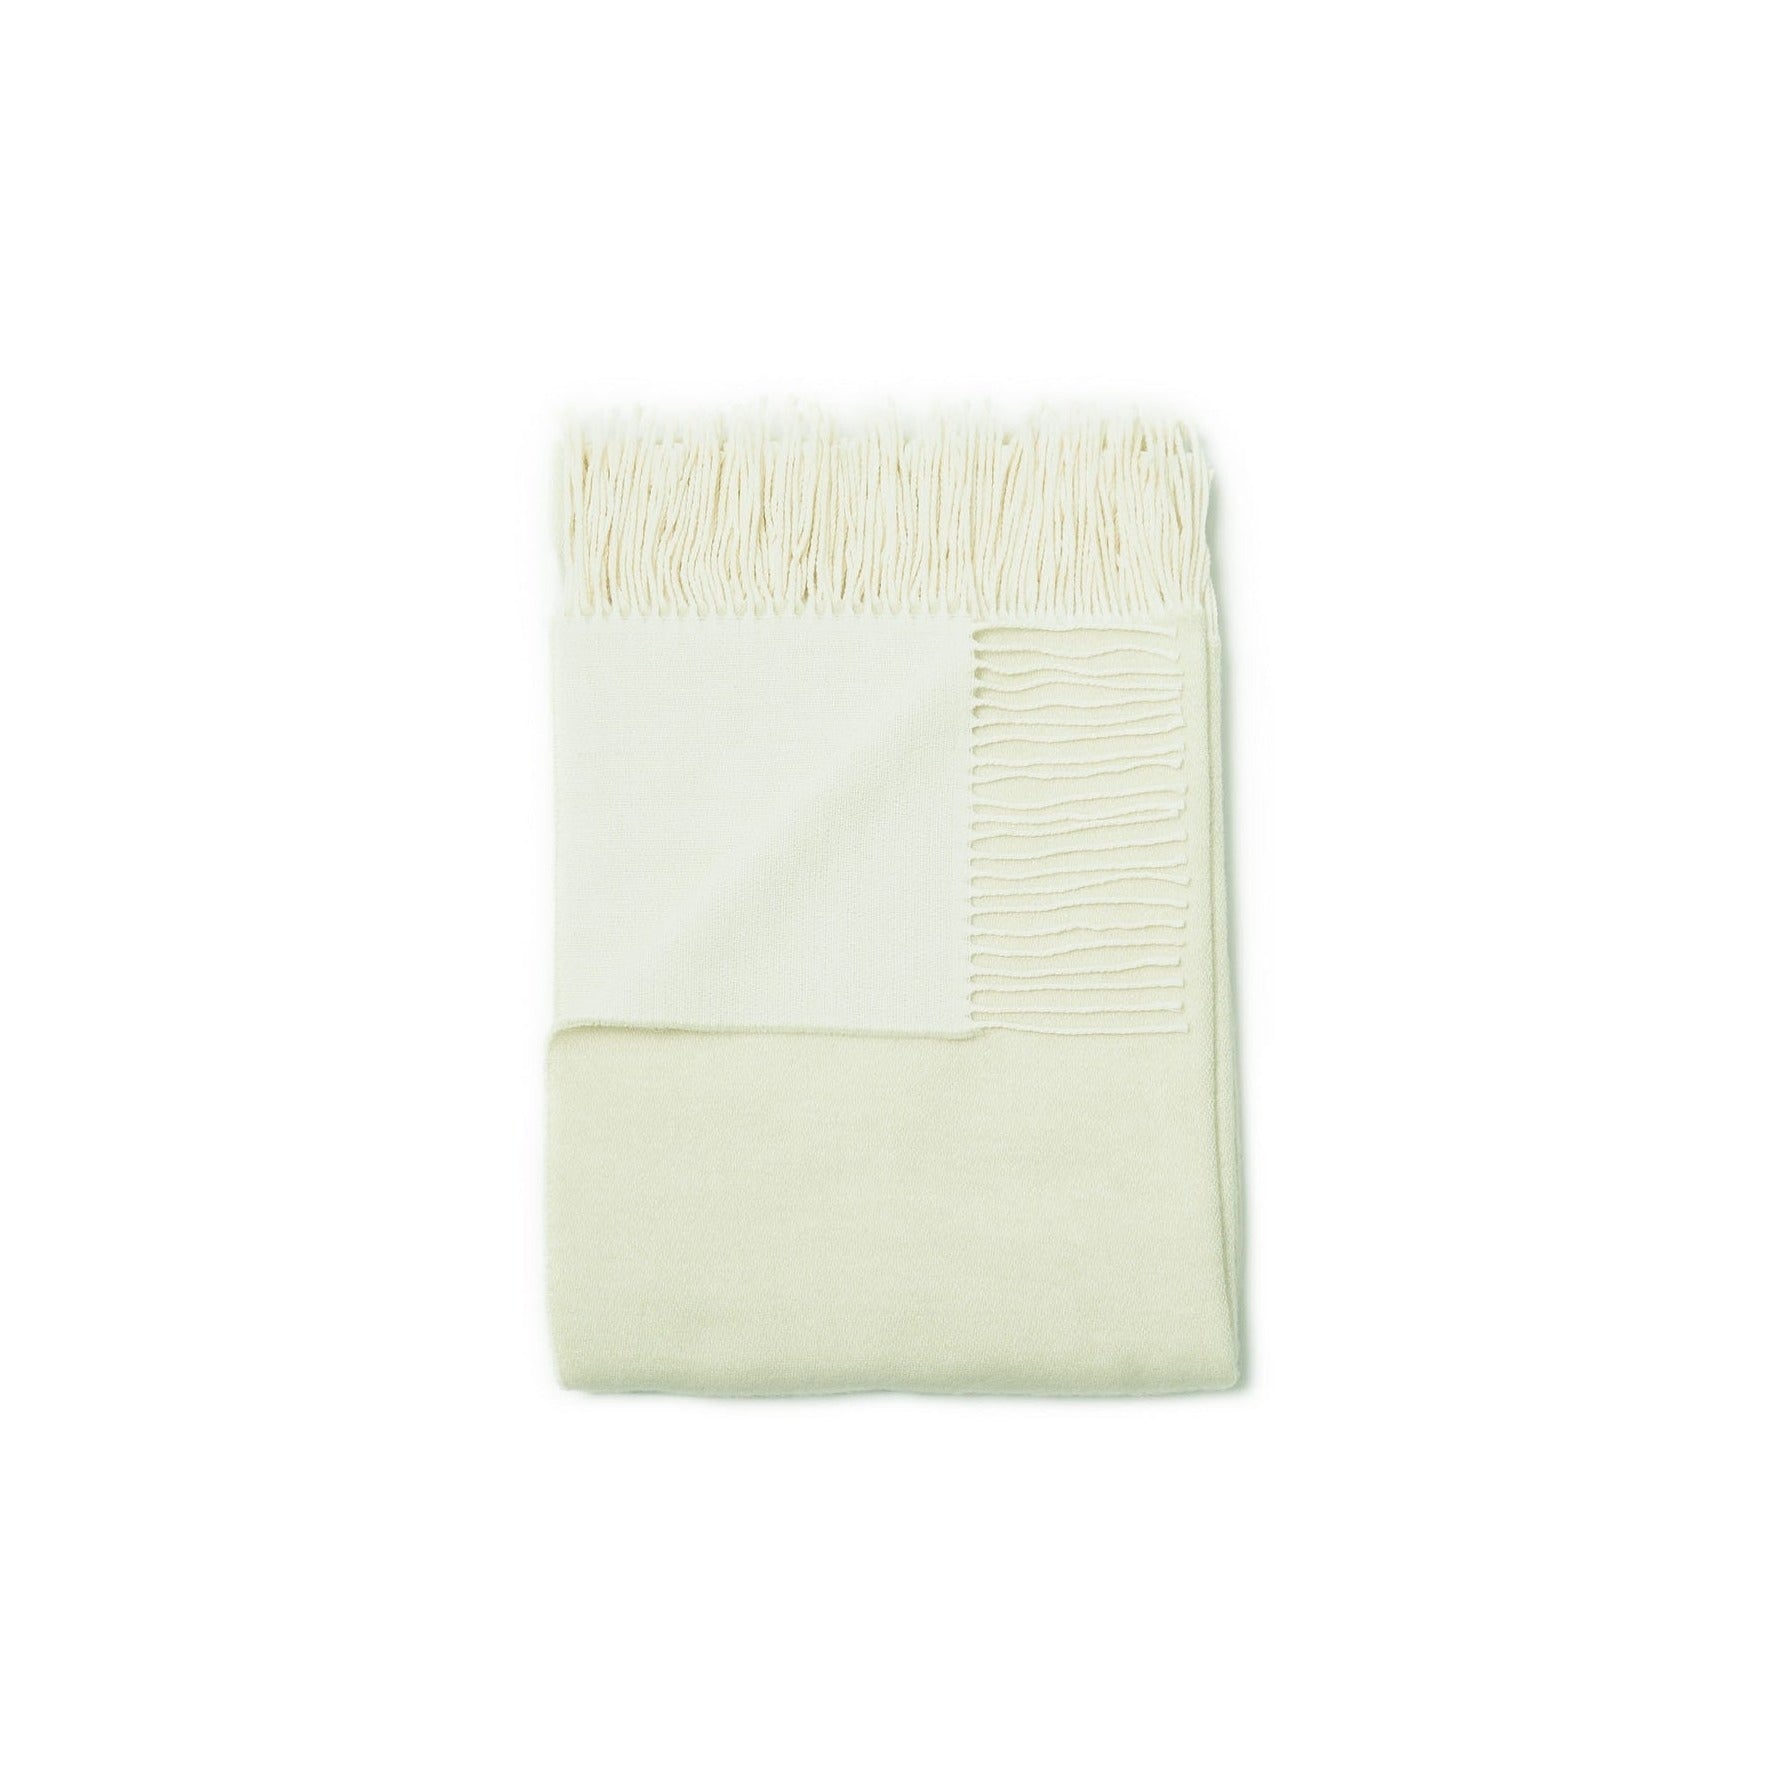 Natural Scandinavian Gotland Wool Throw Blanket - Light Green - Broxle